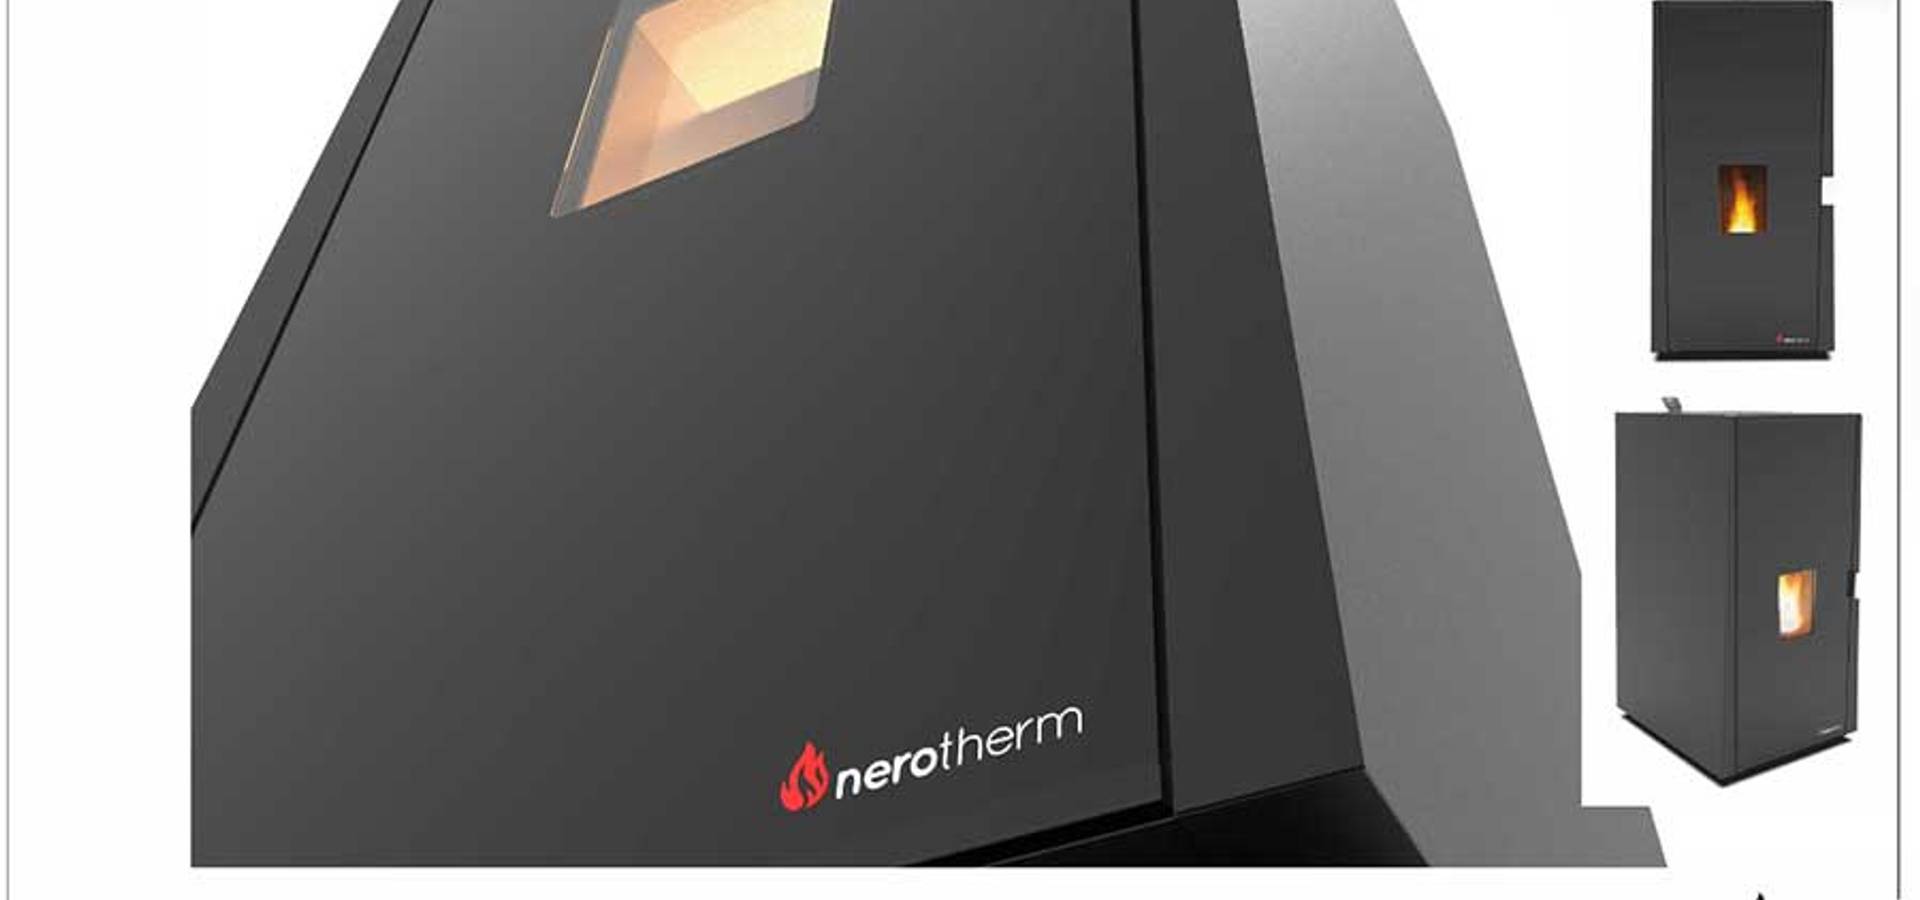 Nerotherm Isıtma Teknolojileri